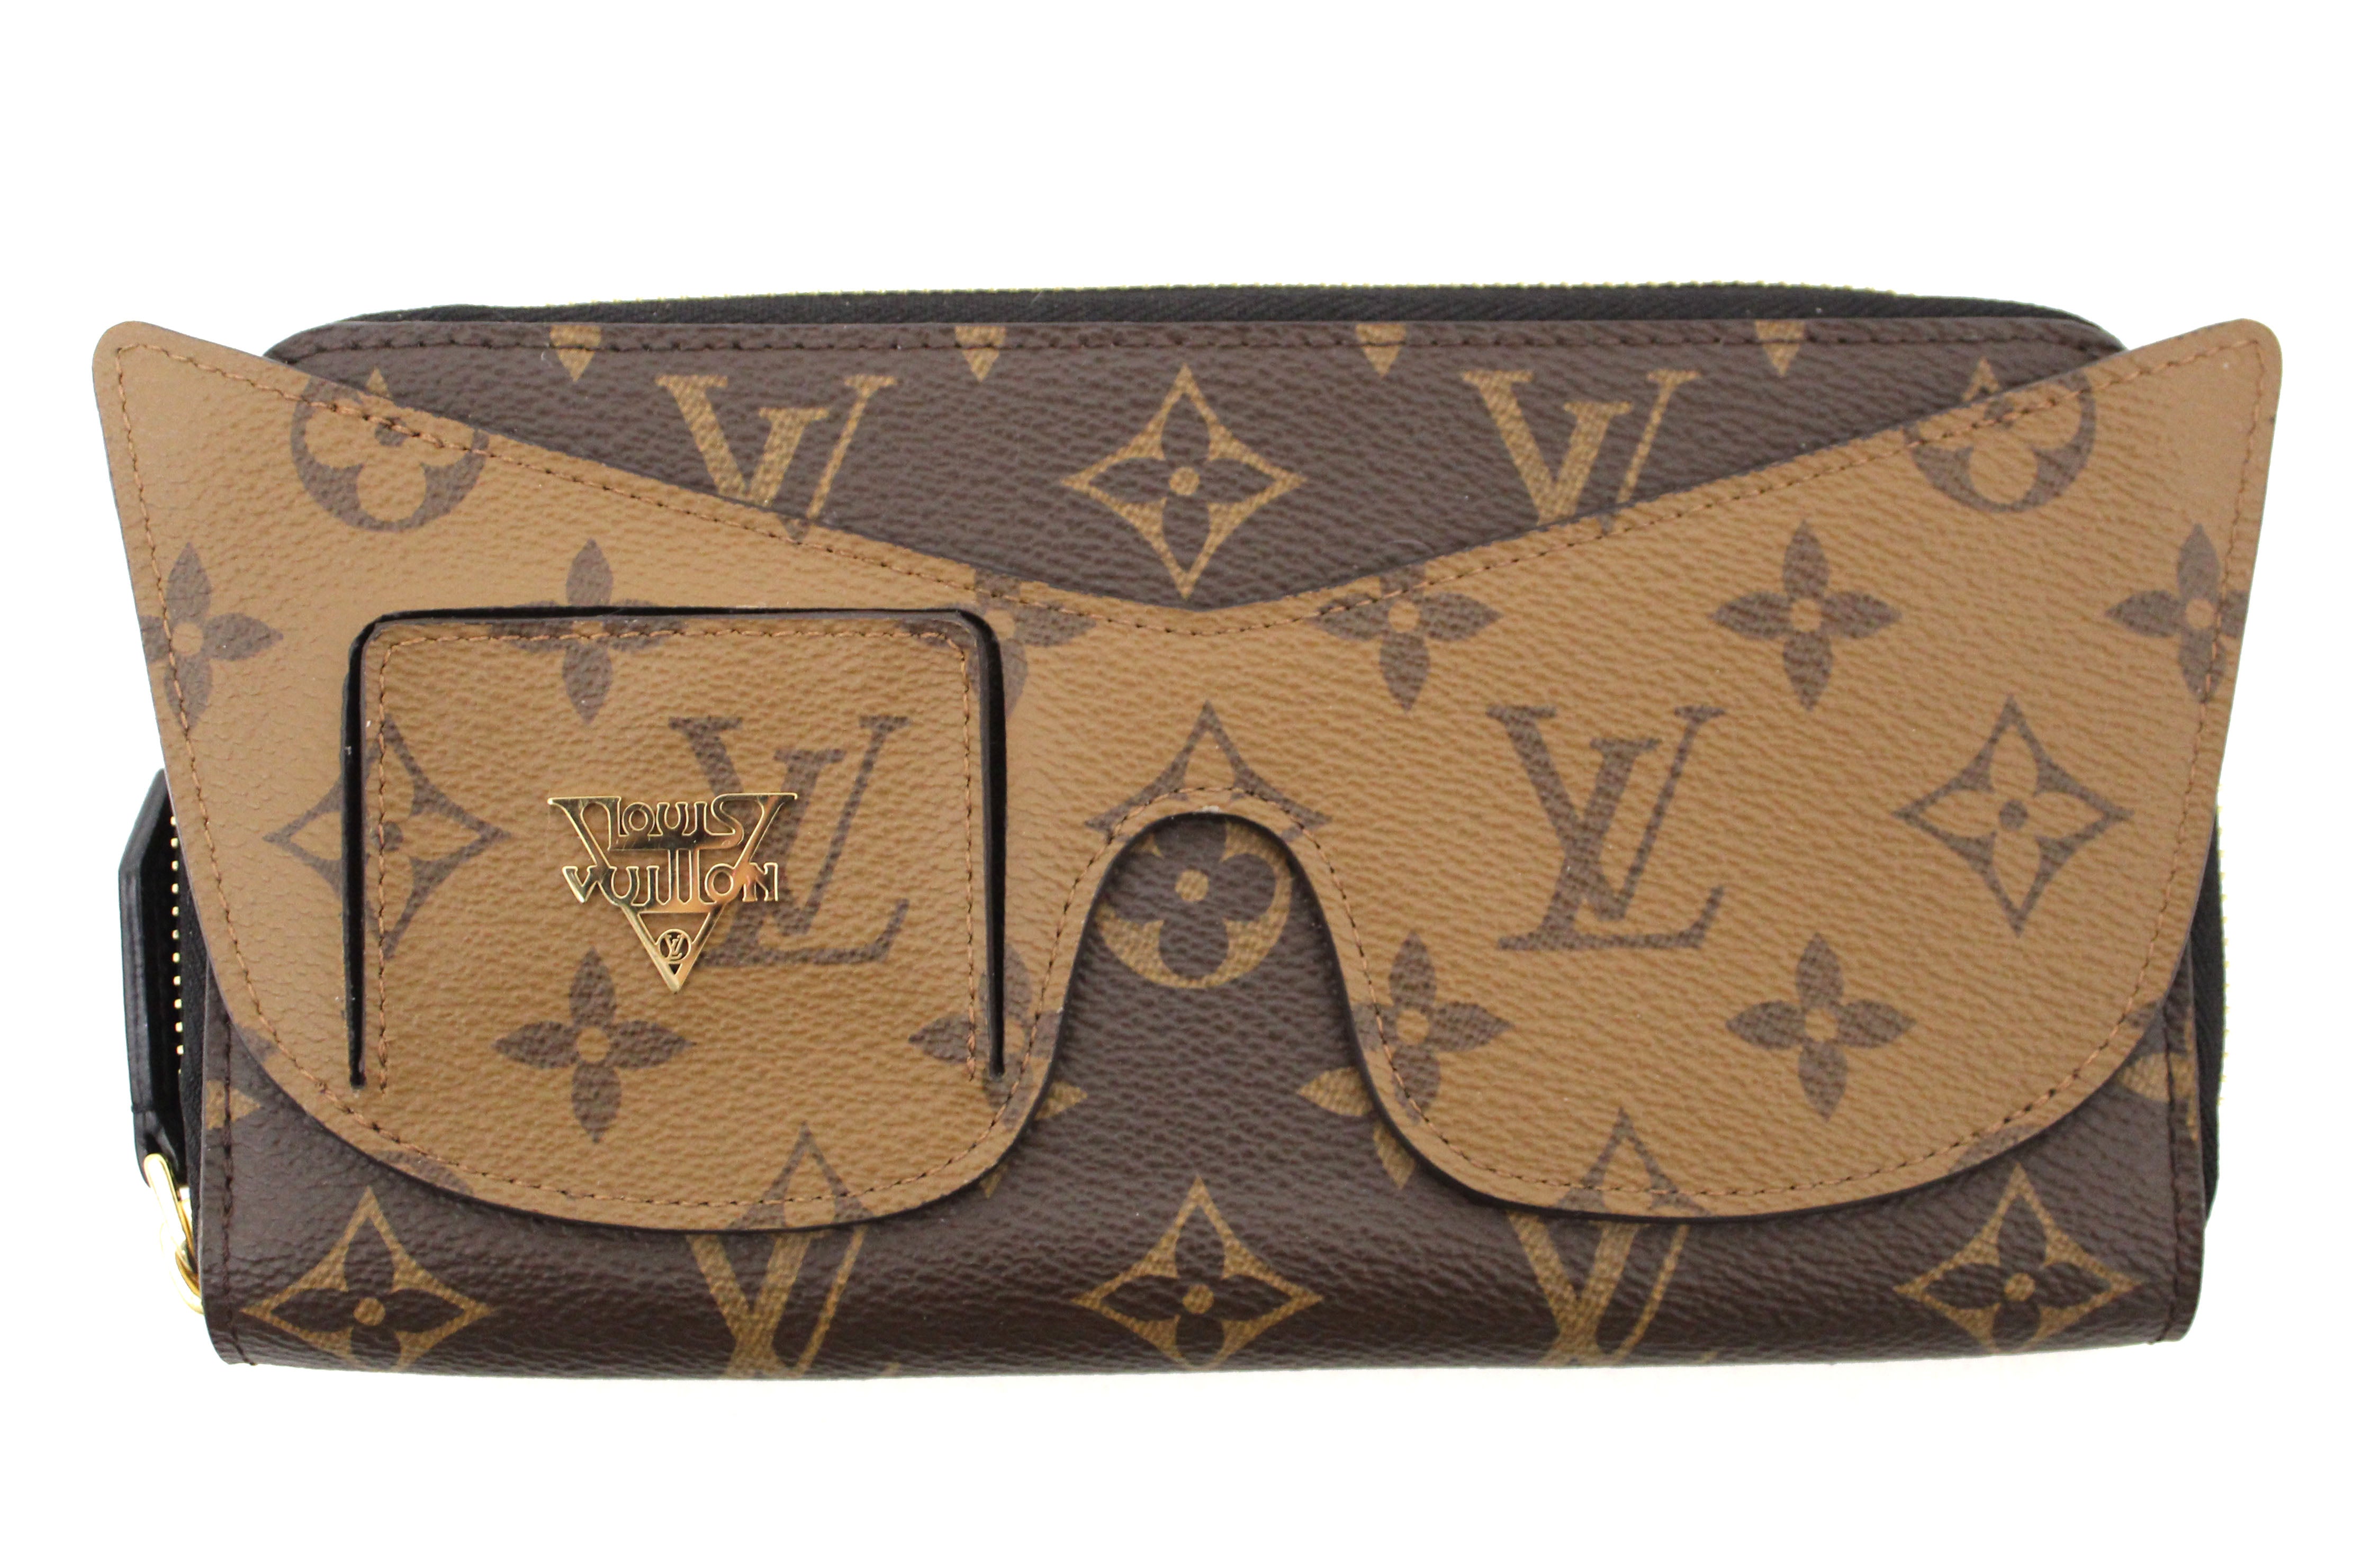 Louis Vuitton - Zippy Organizer ($875) - avail in monogram, damier